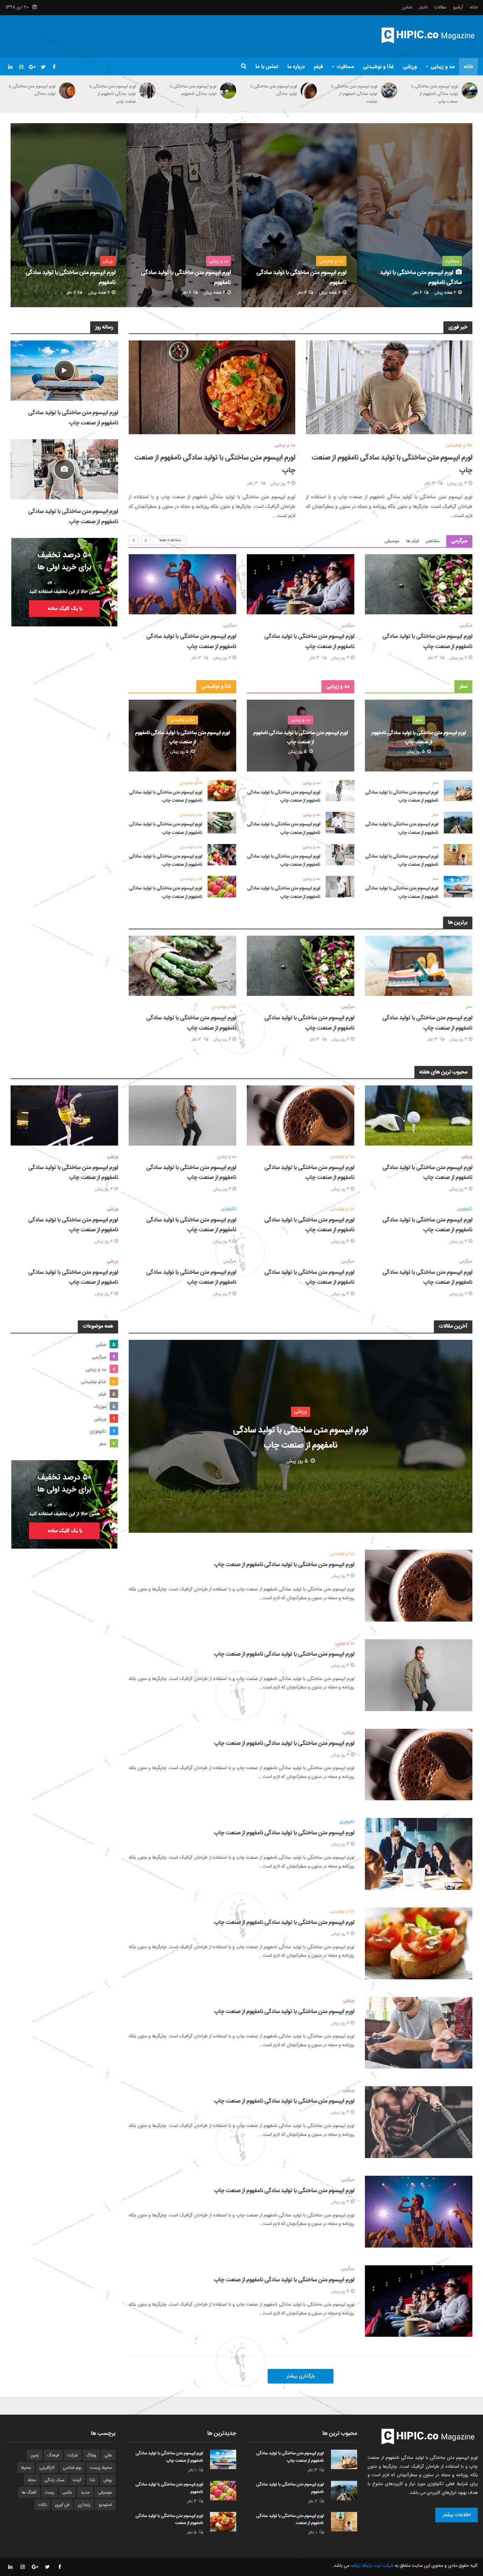 خرید قالب سایت و طراحی سایت مجله اینترنتی